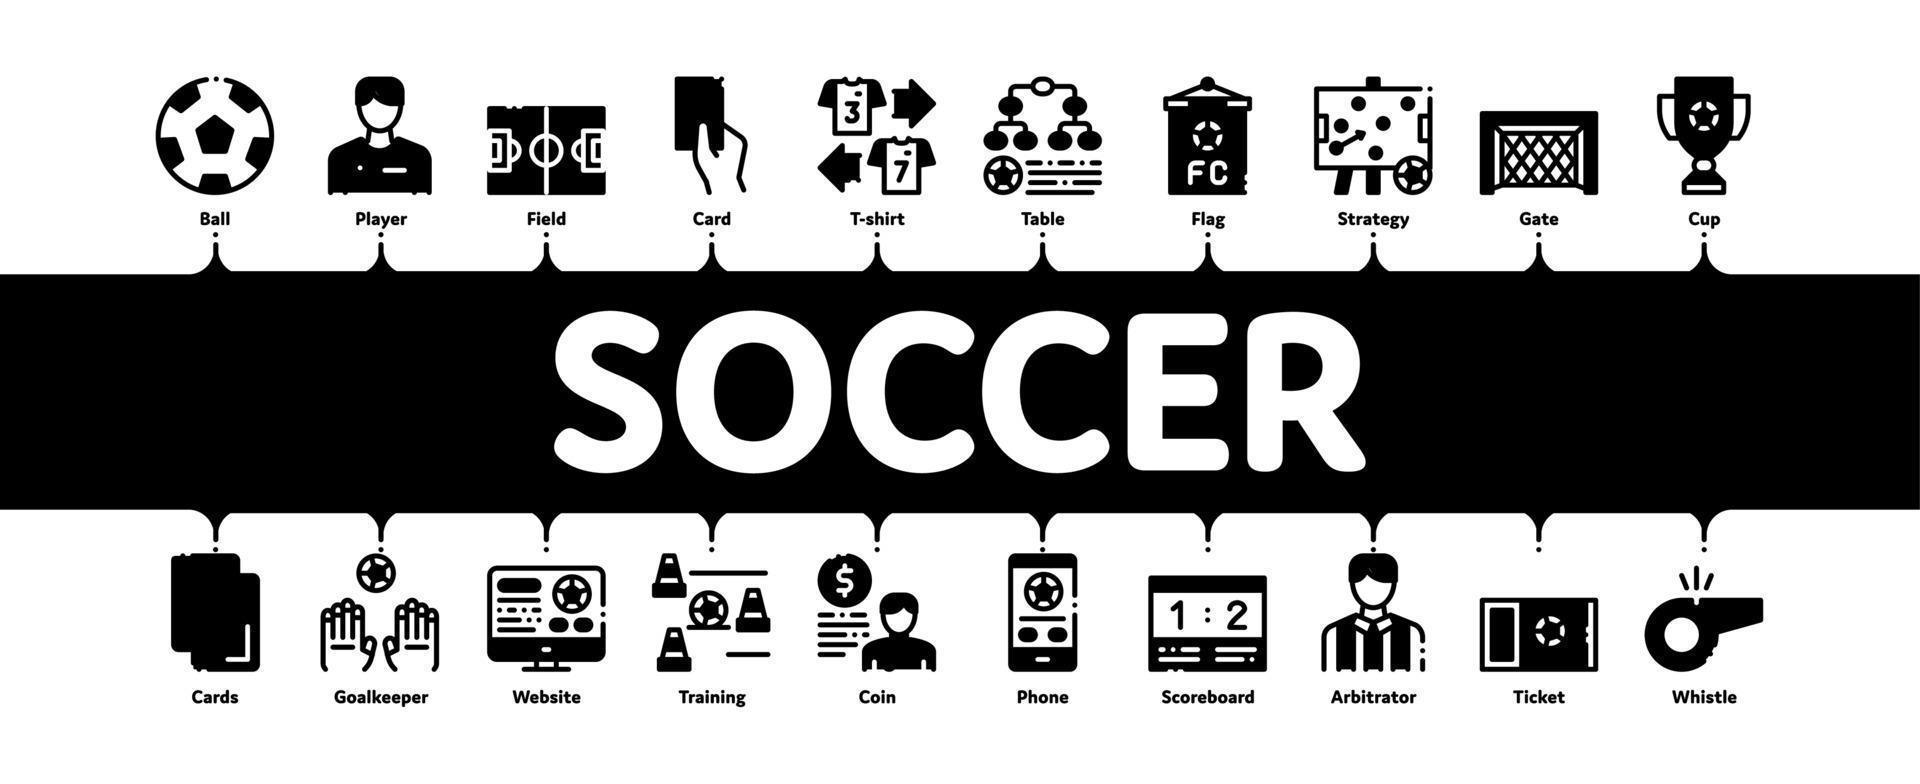 fotboll fotboll spel minimal infographic baner vektor